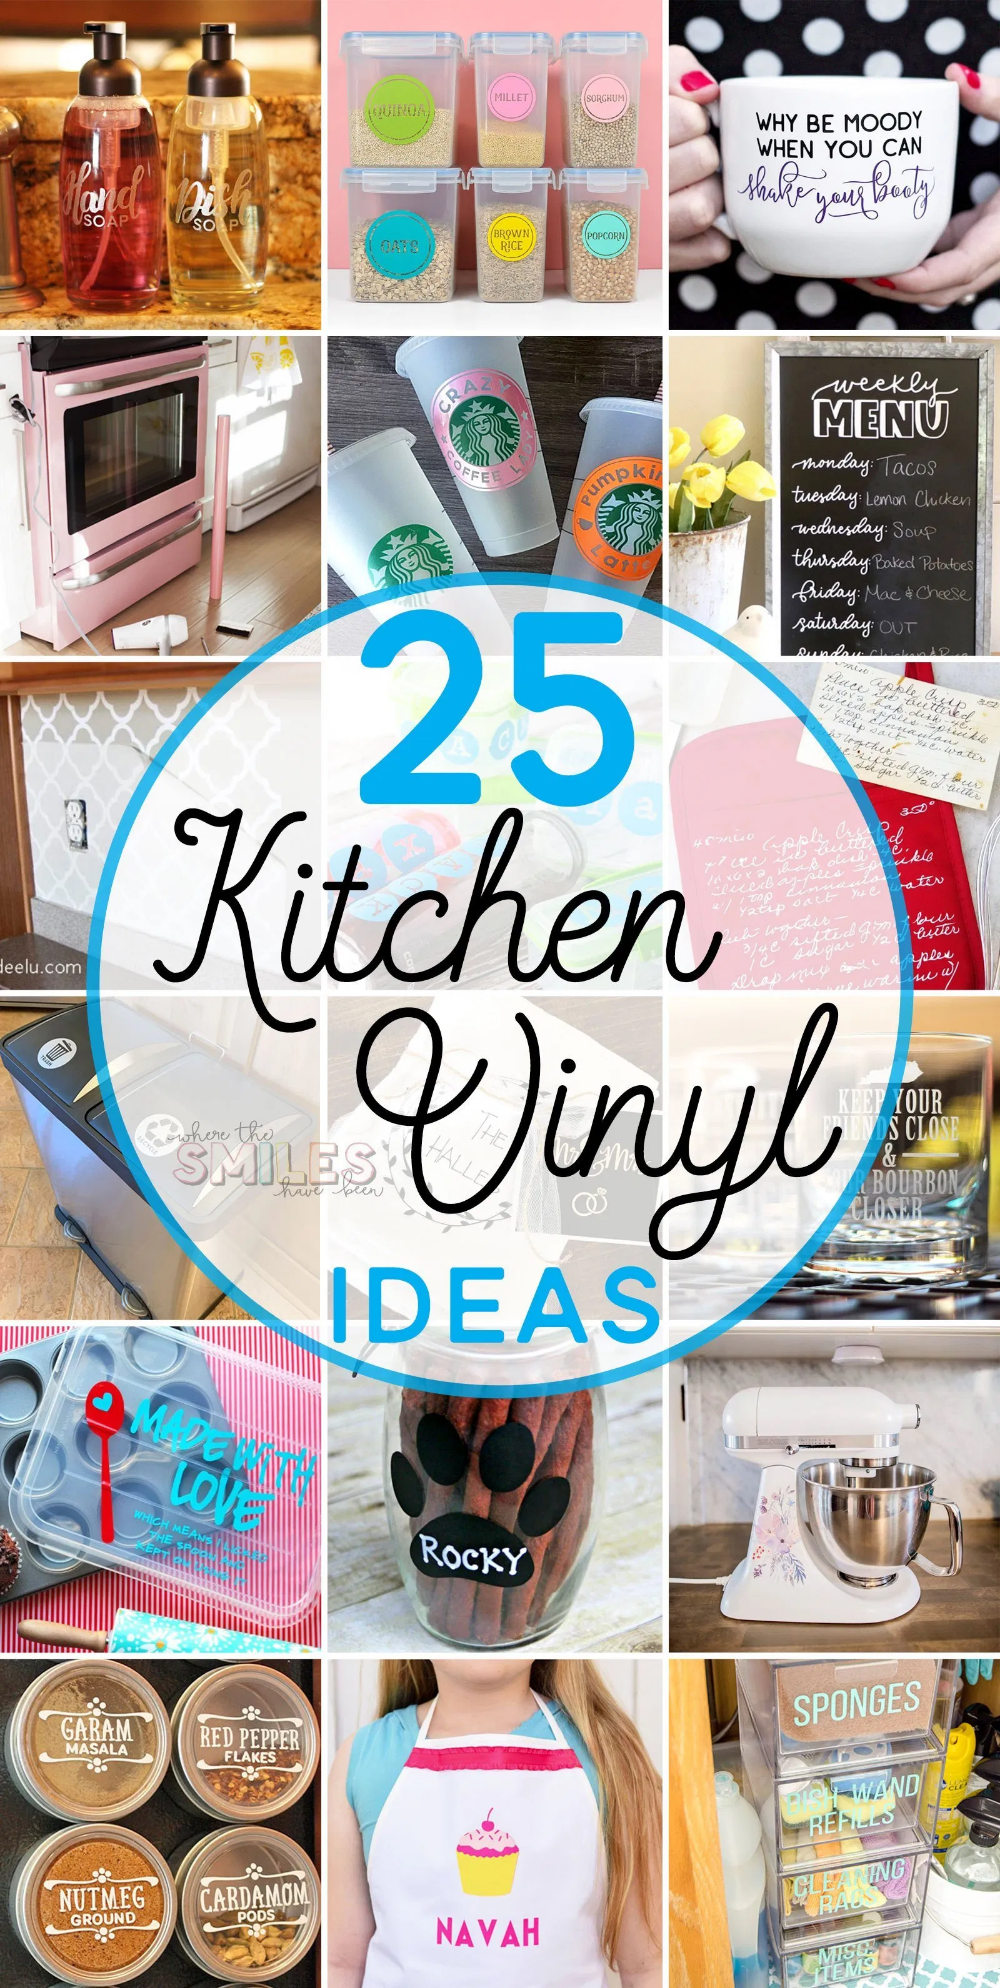 19 diy Kitchen crafts ideas